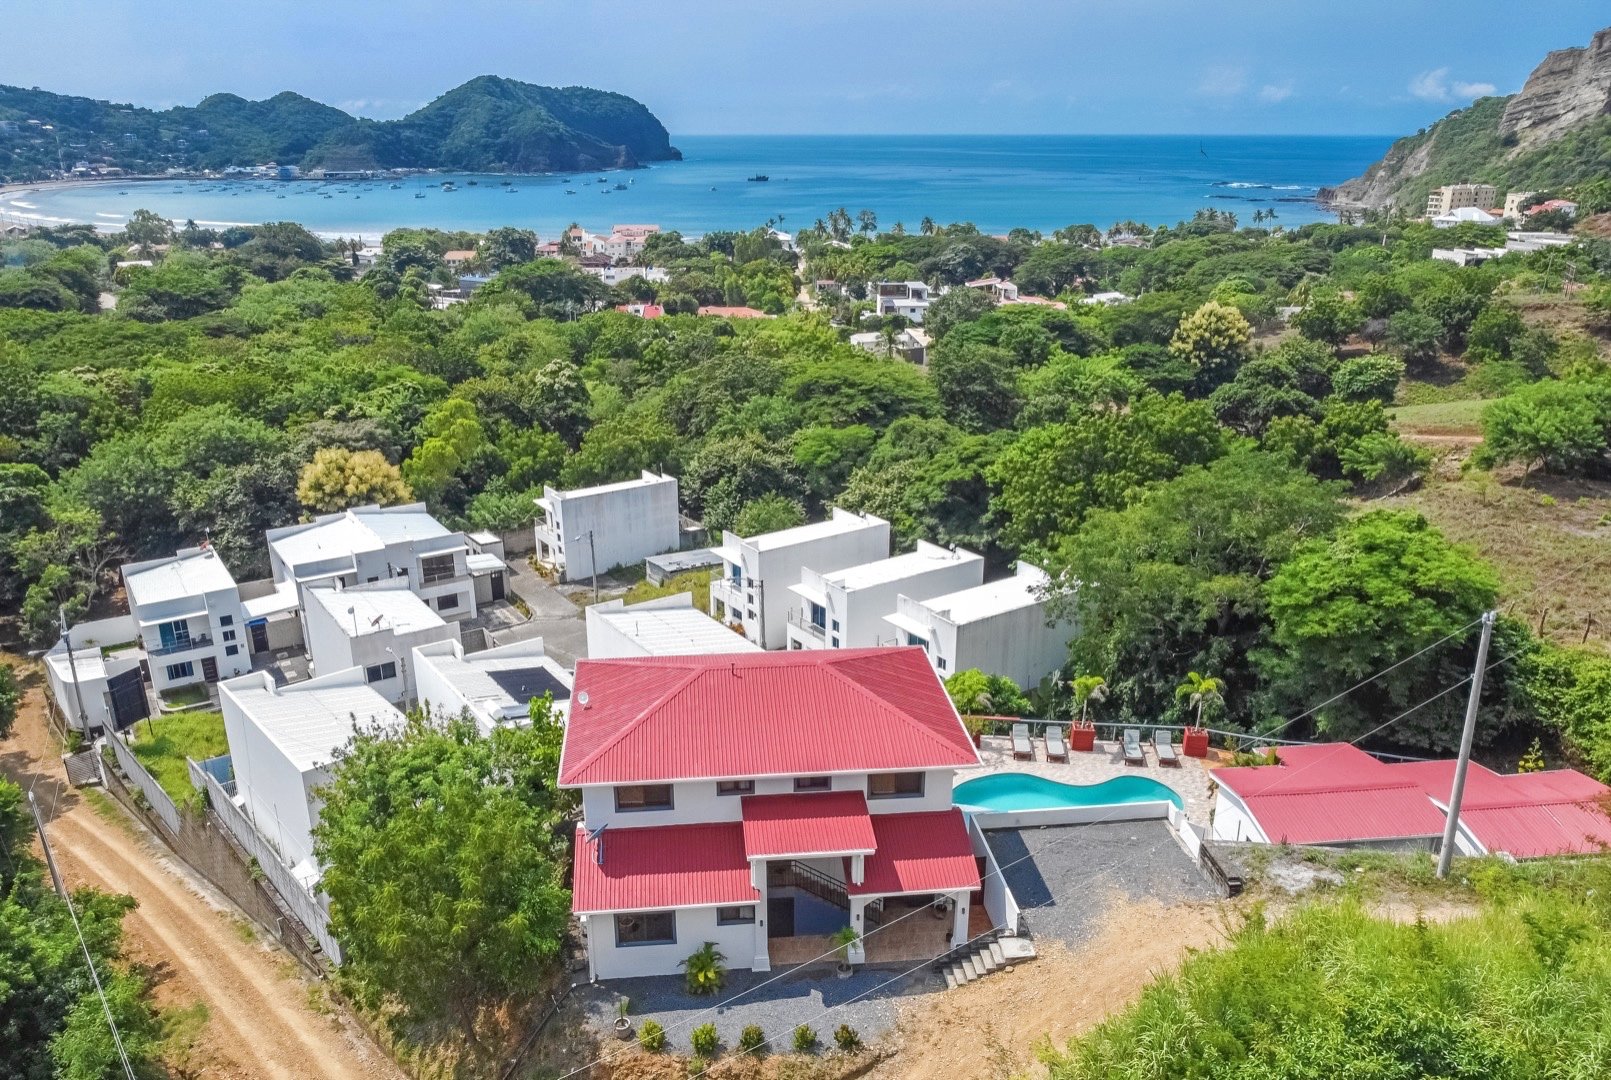 Home House Property Real Estate BnB For Sale San Juan Del Sur Nicaragua 9.jpg